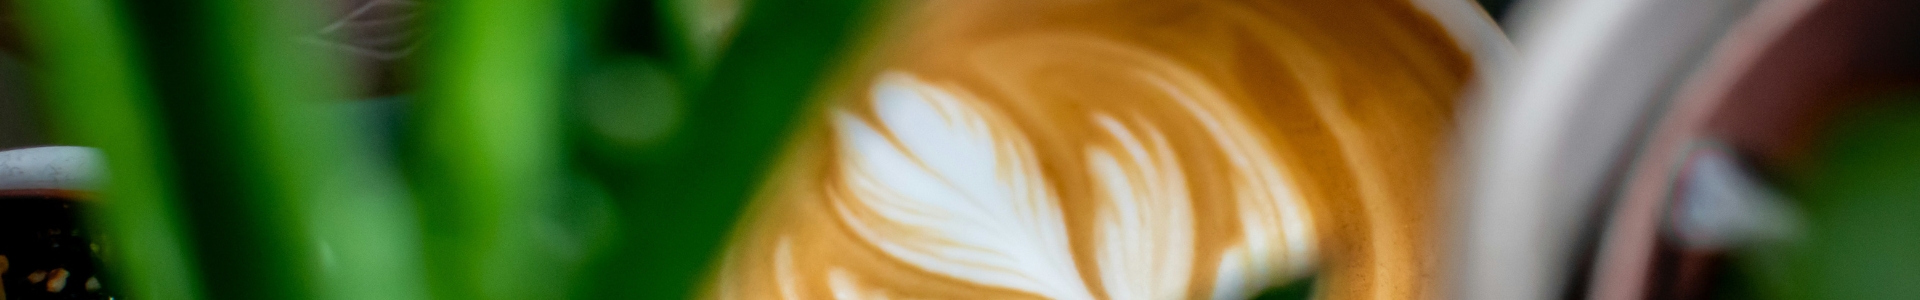 Latte Art Kaffee hinter Pflanzen